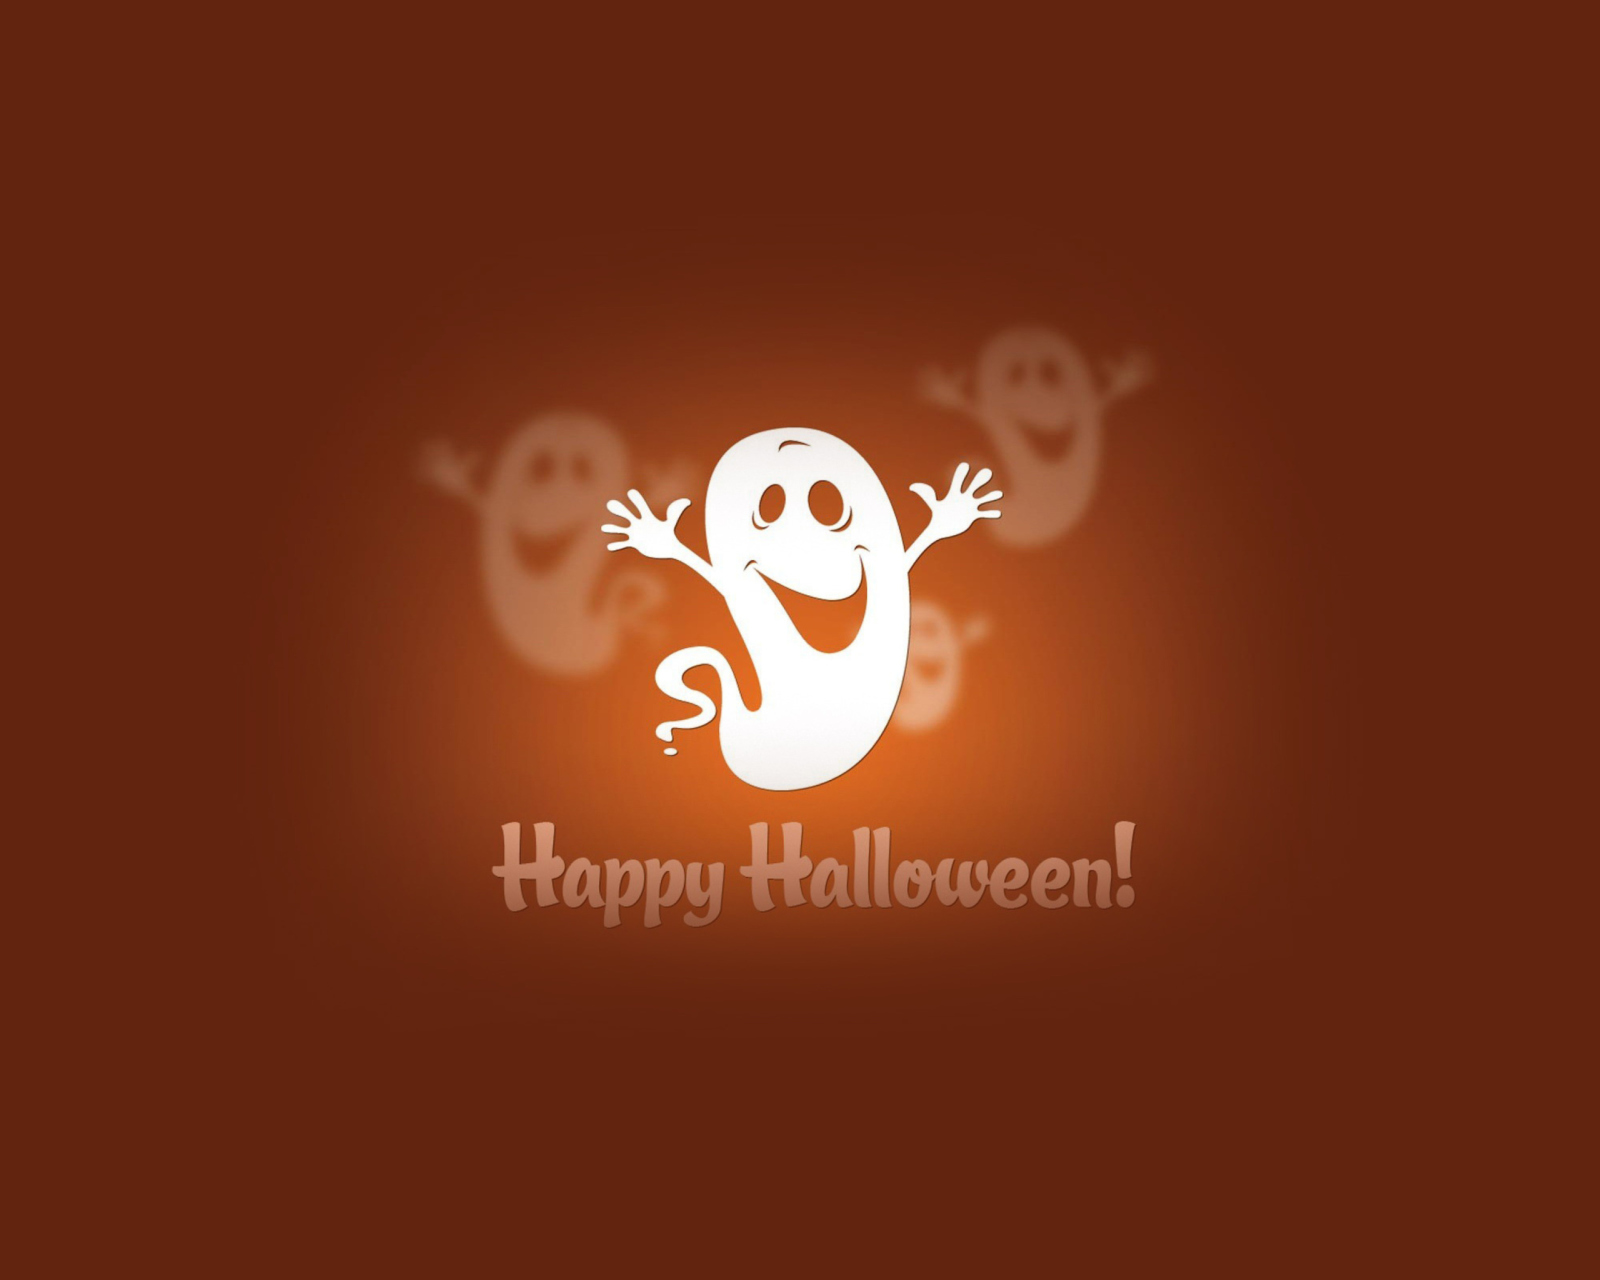 Happy Halloween wallpaper 1600x1280